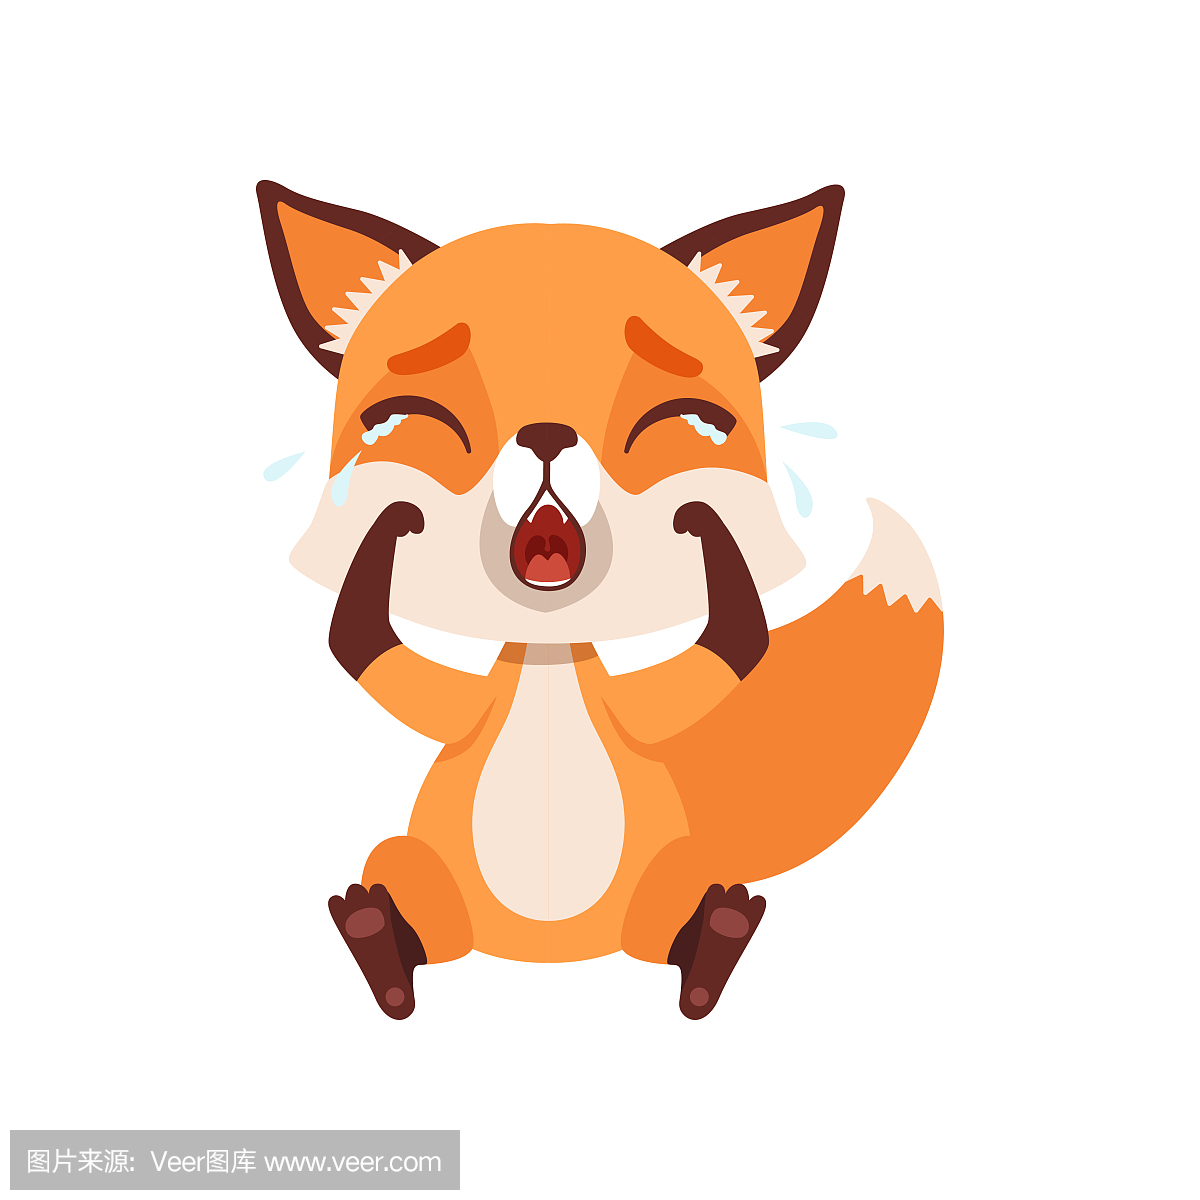 可爱的伤心狐狸字符坐在地板上和哭泣,有趣的